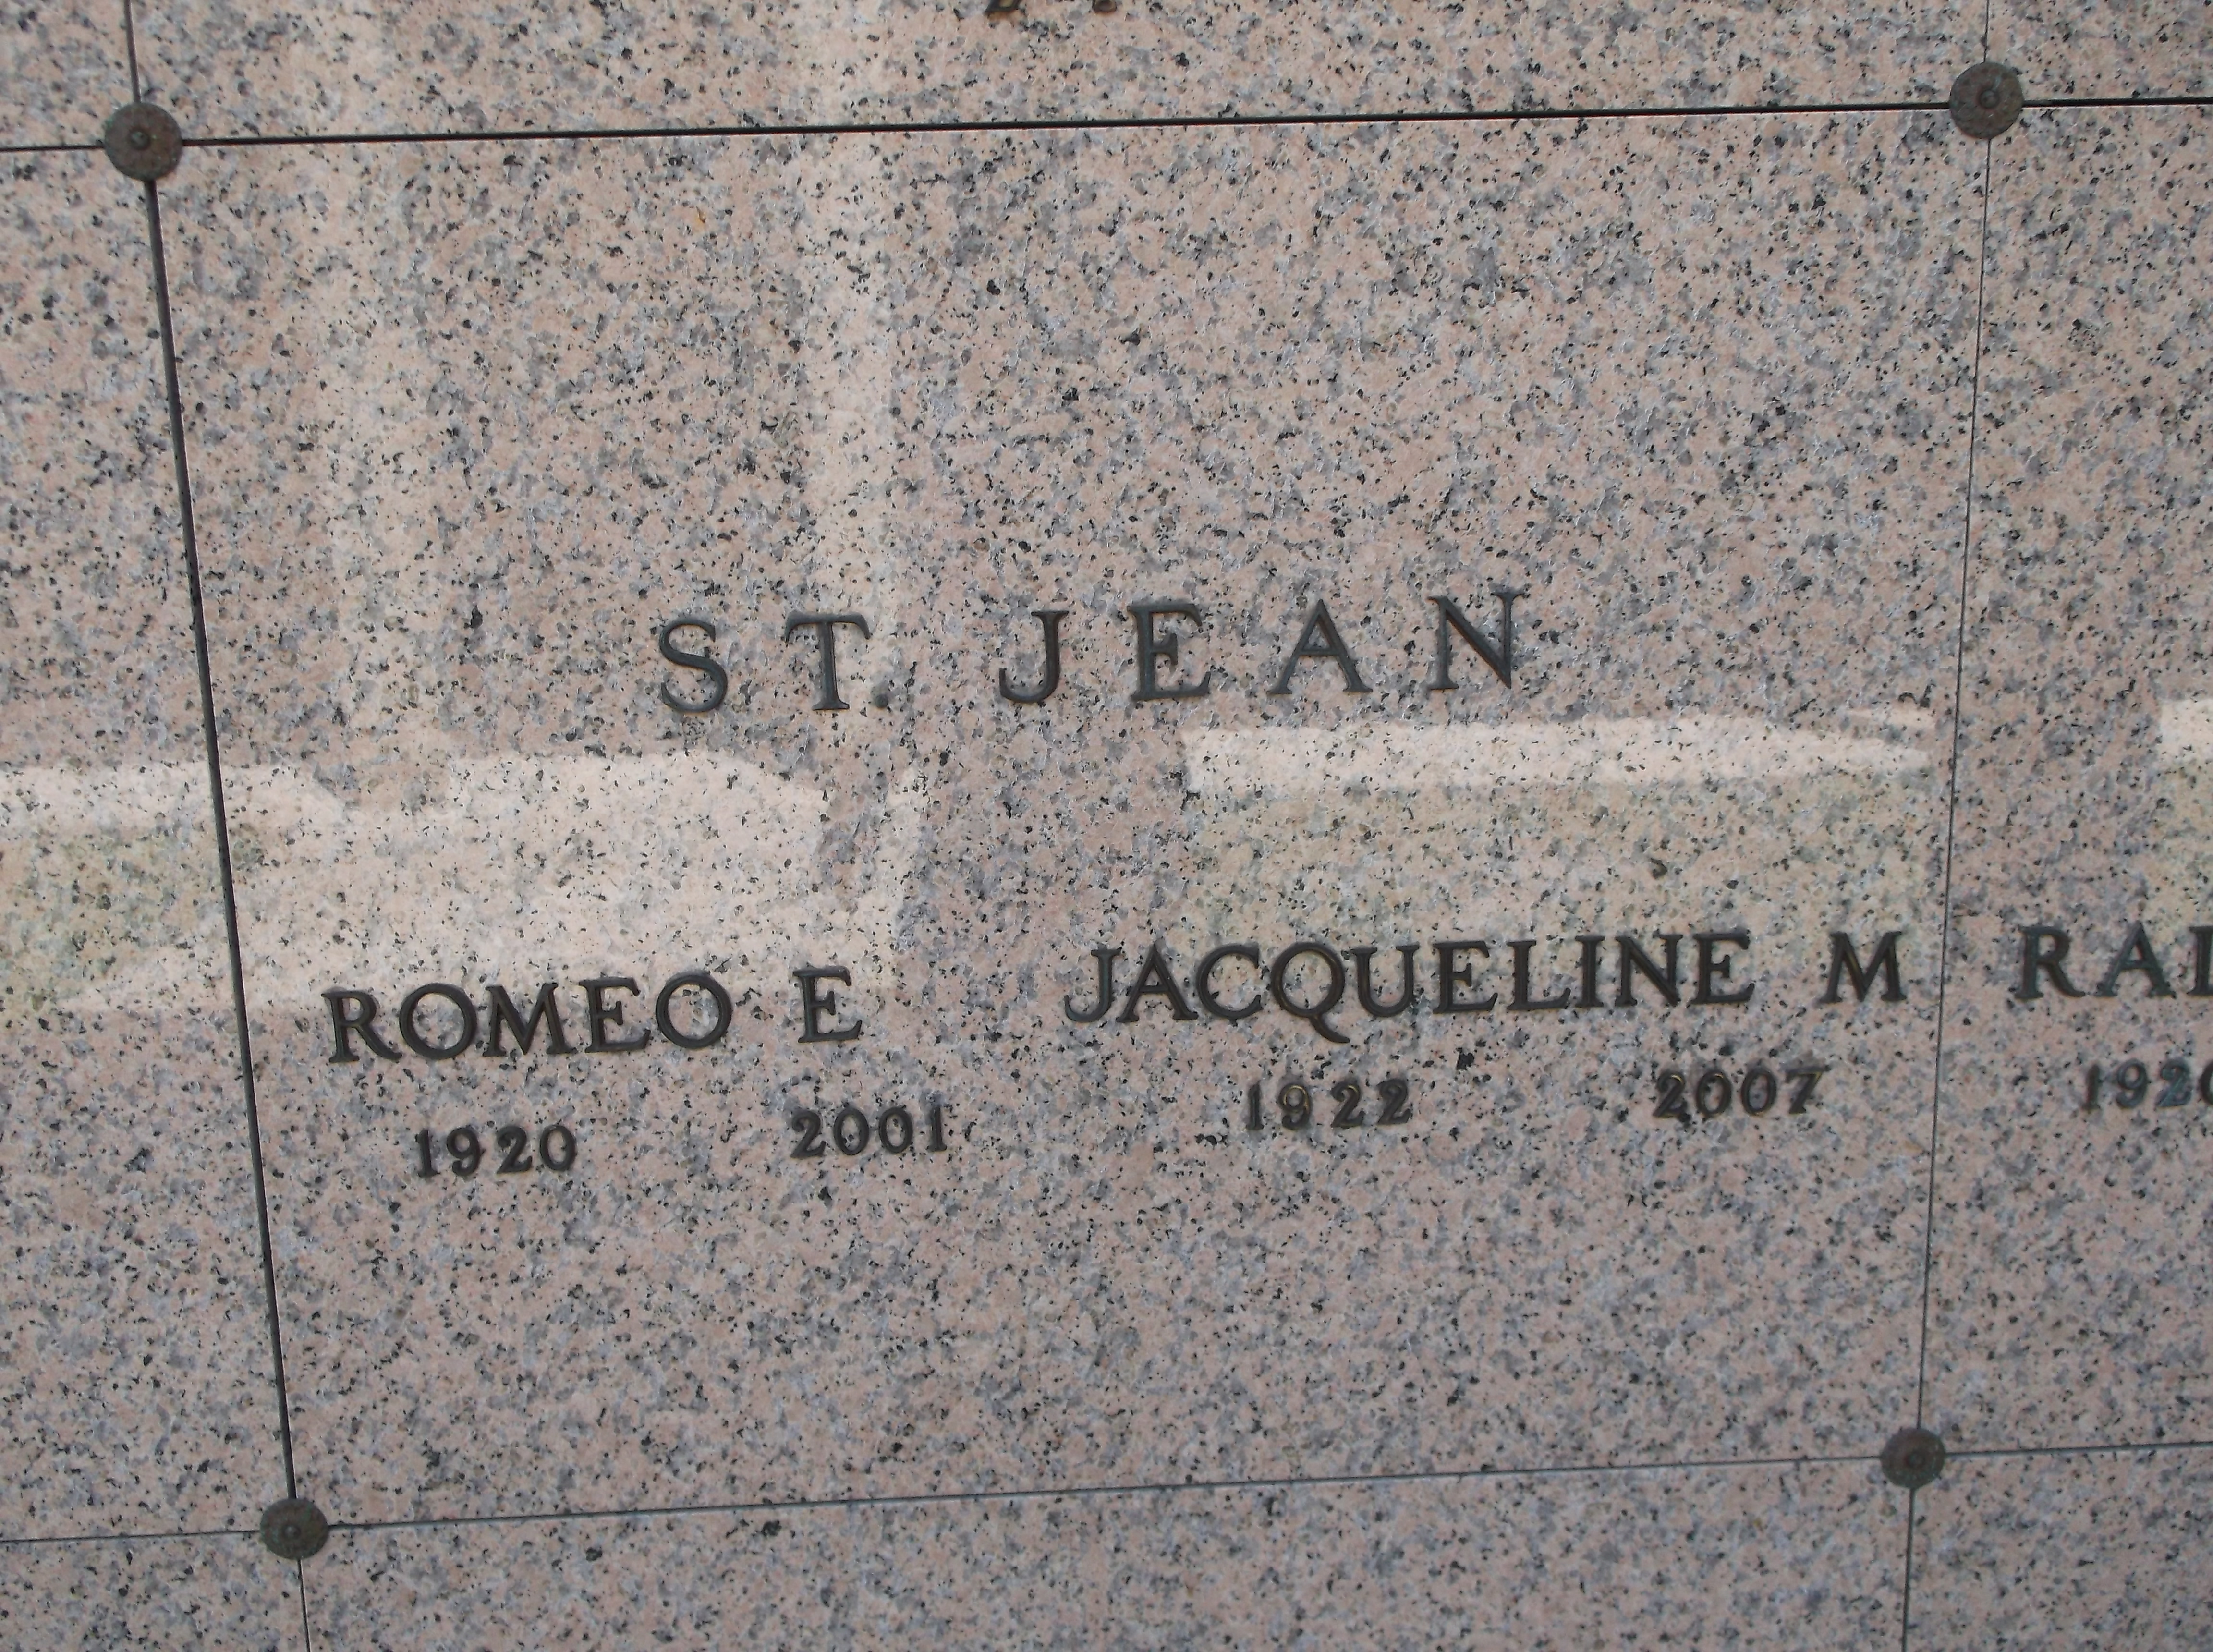 Jacqueline M St Jean